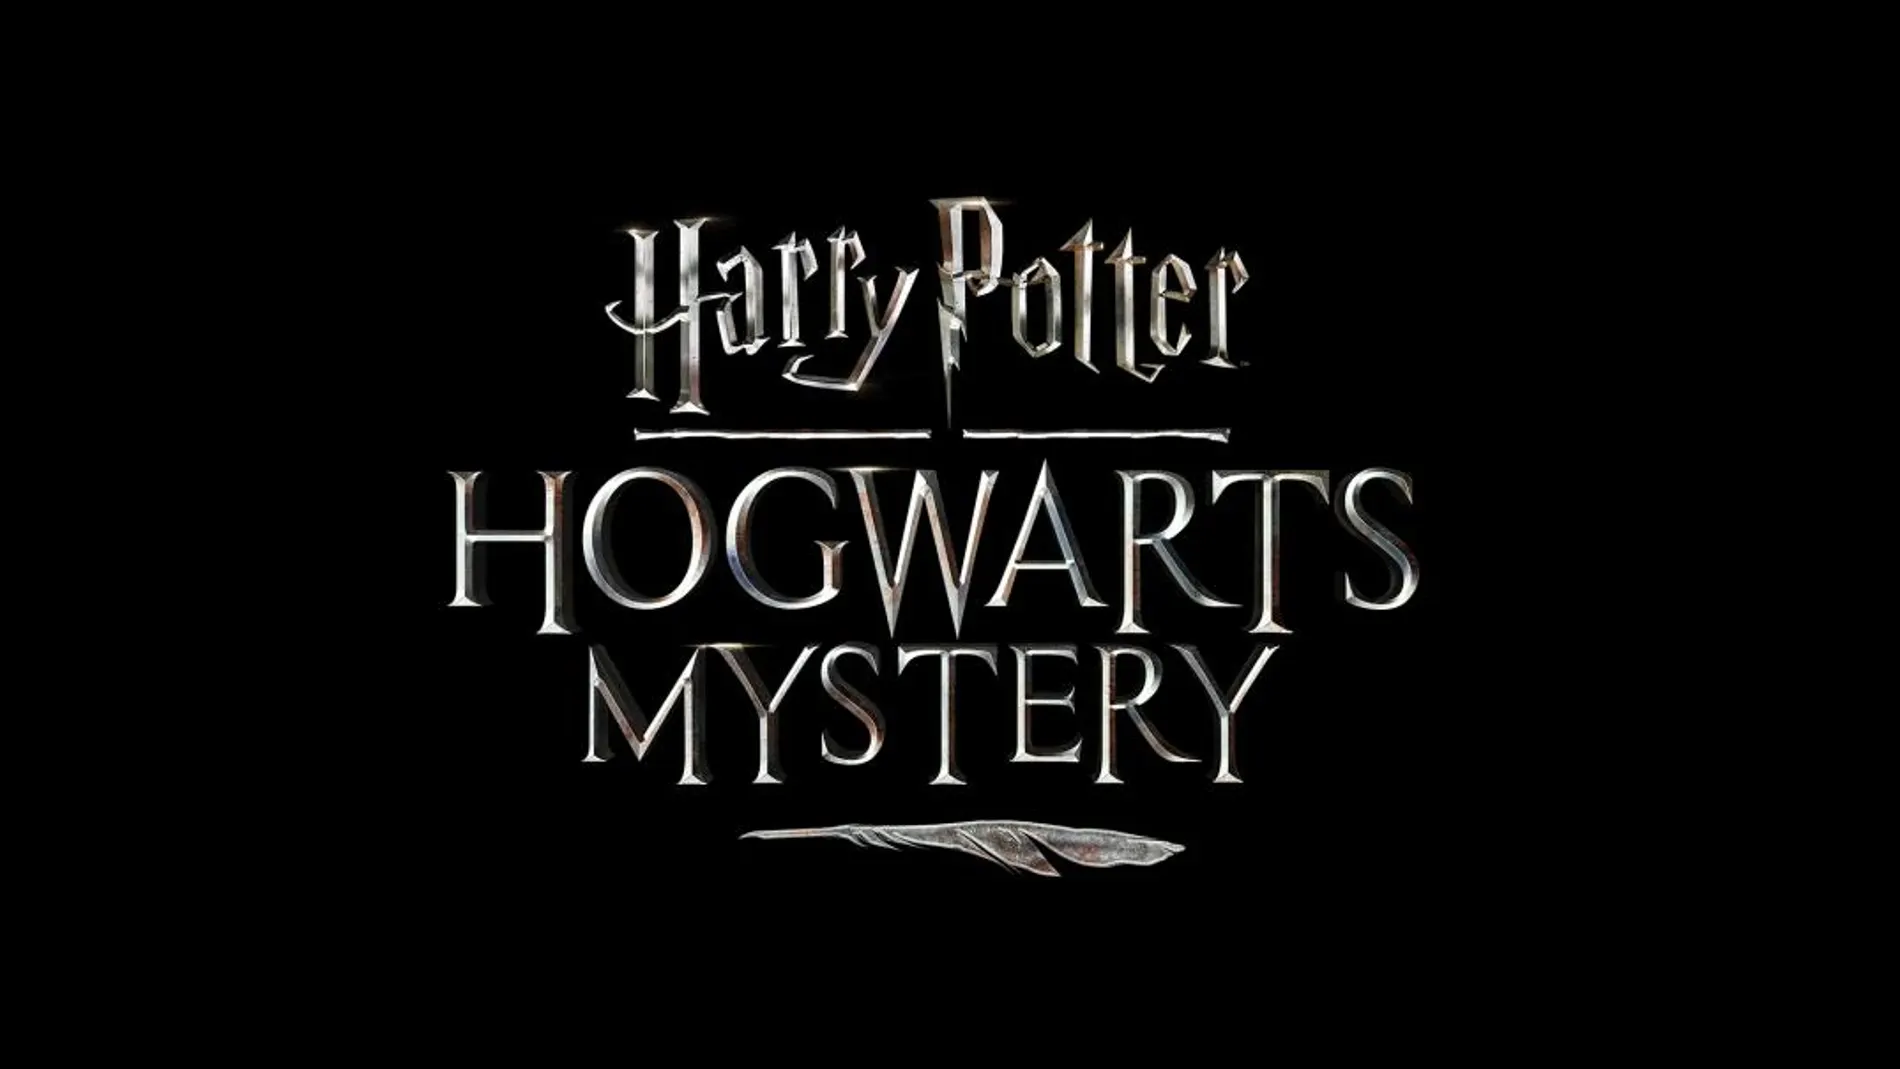 Nuevos detalles de Harry Potter Hogwarts Mystery, que llegará a móviles en 2018